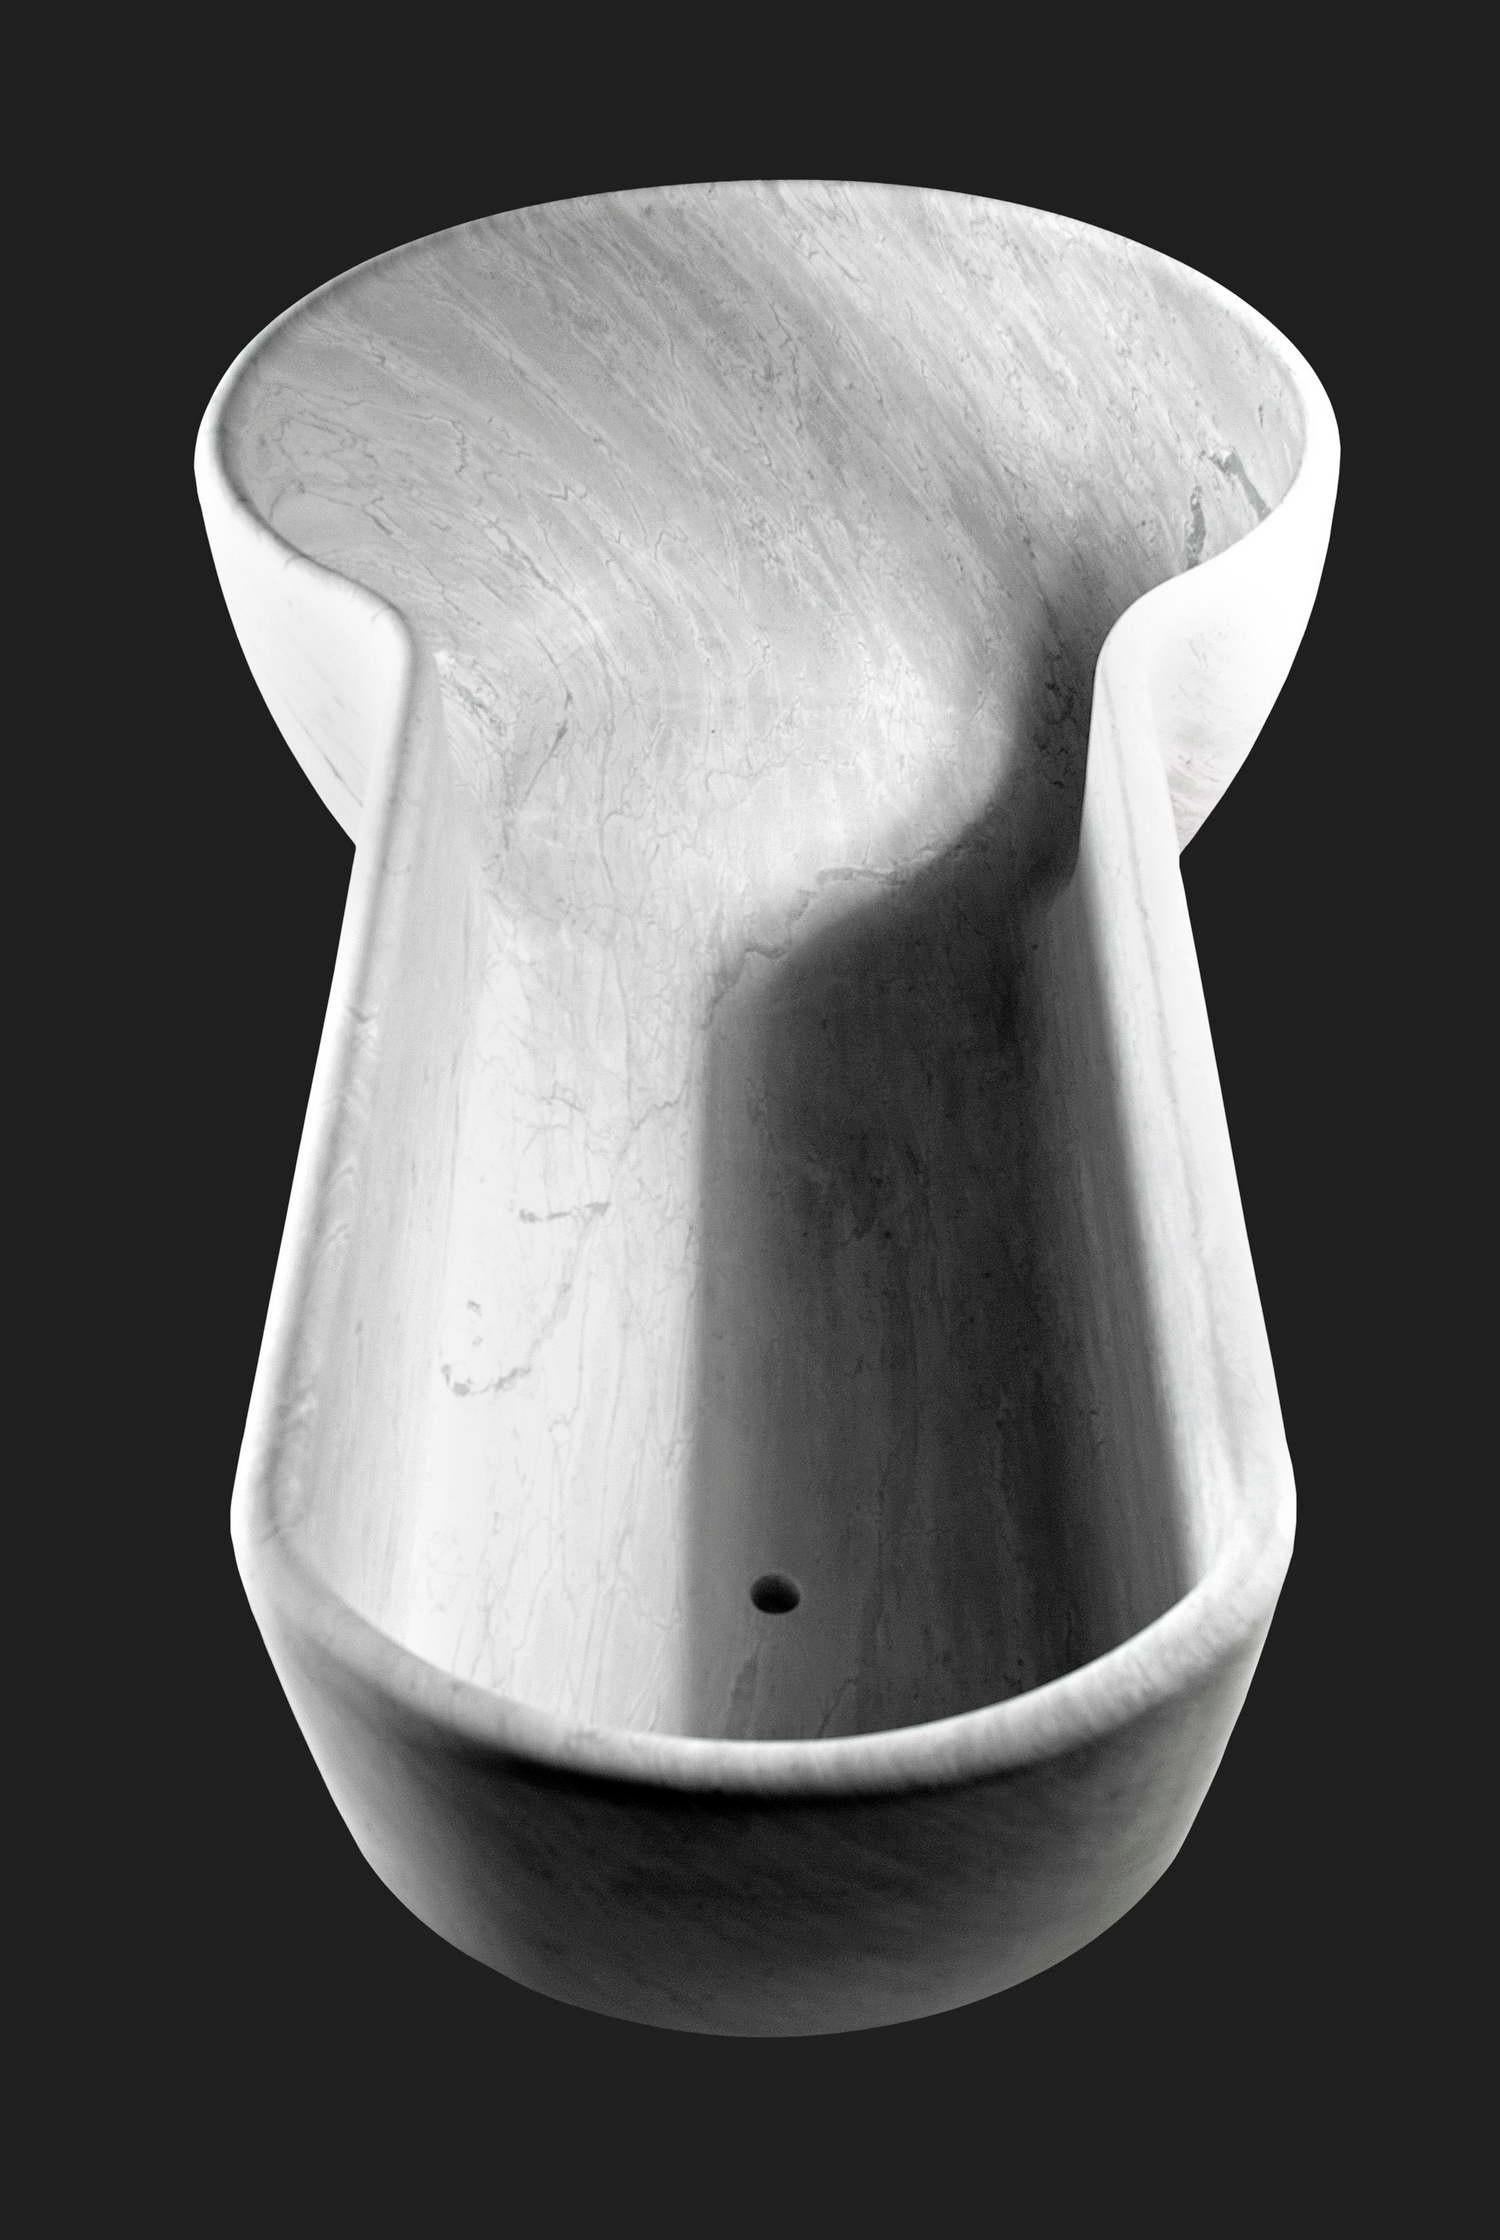 Baignoire-douche en marbre de Bardiglio Oliva conçue par Ugo La Pietra.

Taille : cm.212 x 112 x 51.5 H.
Matériaux : Bardiglio Oliva
Conçu par : Ugo La Pietra